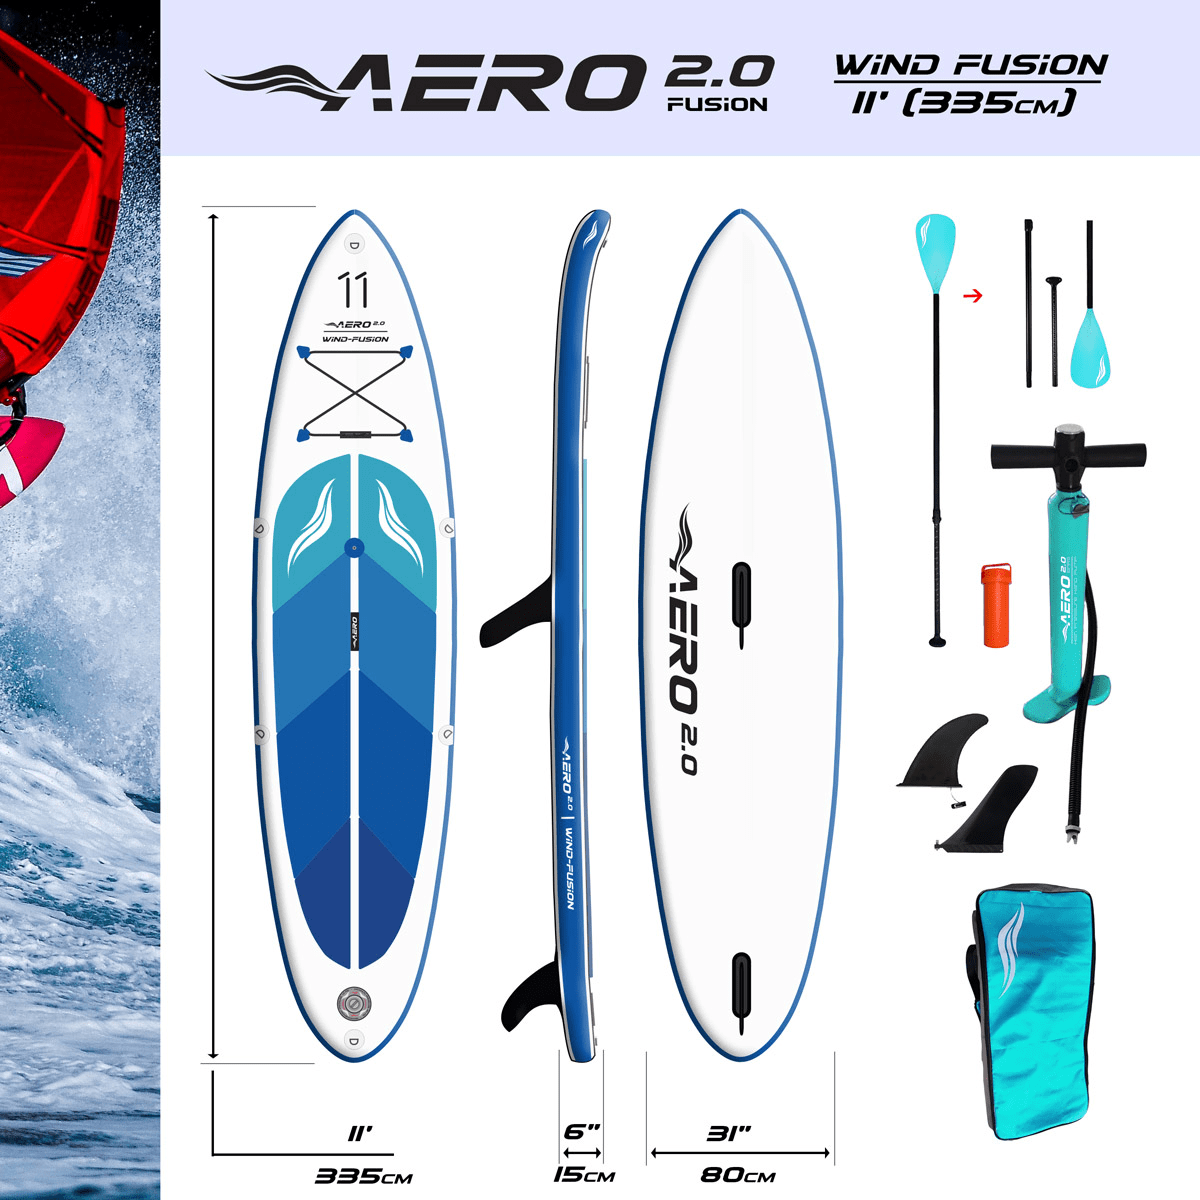 aero-20-wind-fusion-11-fusion-sup-board-complekt